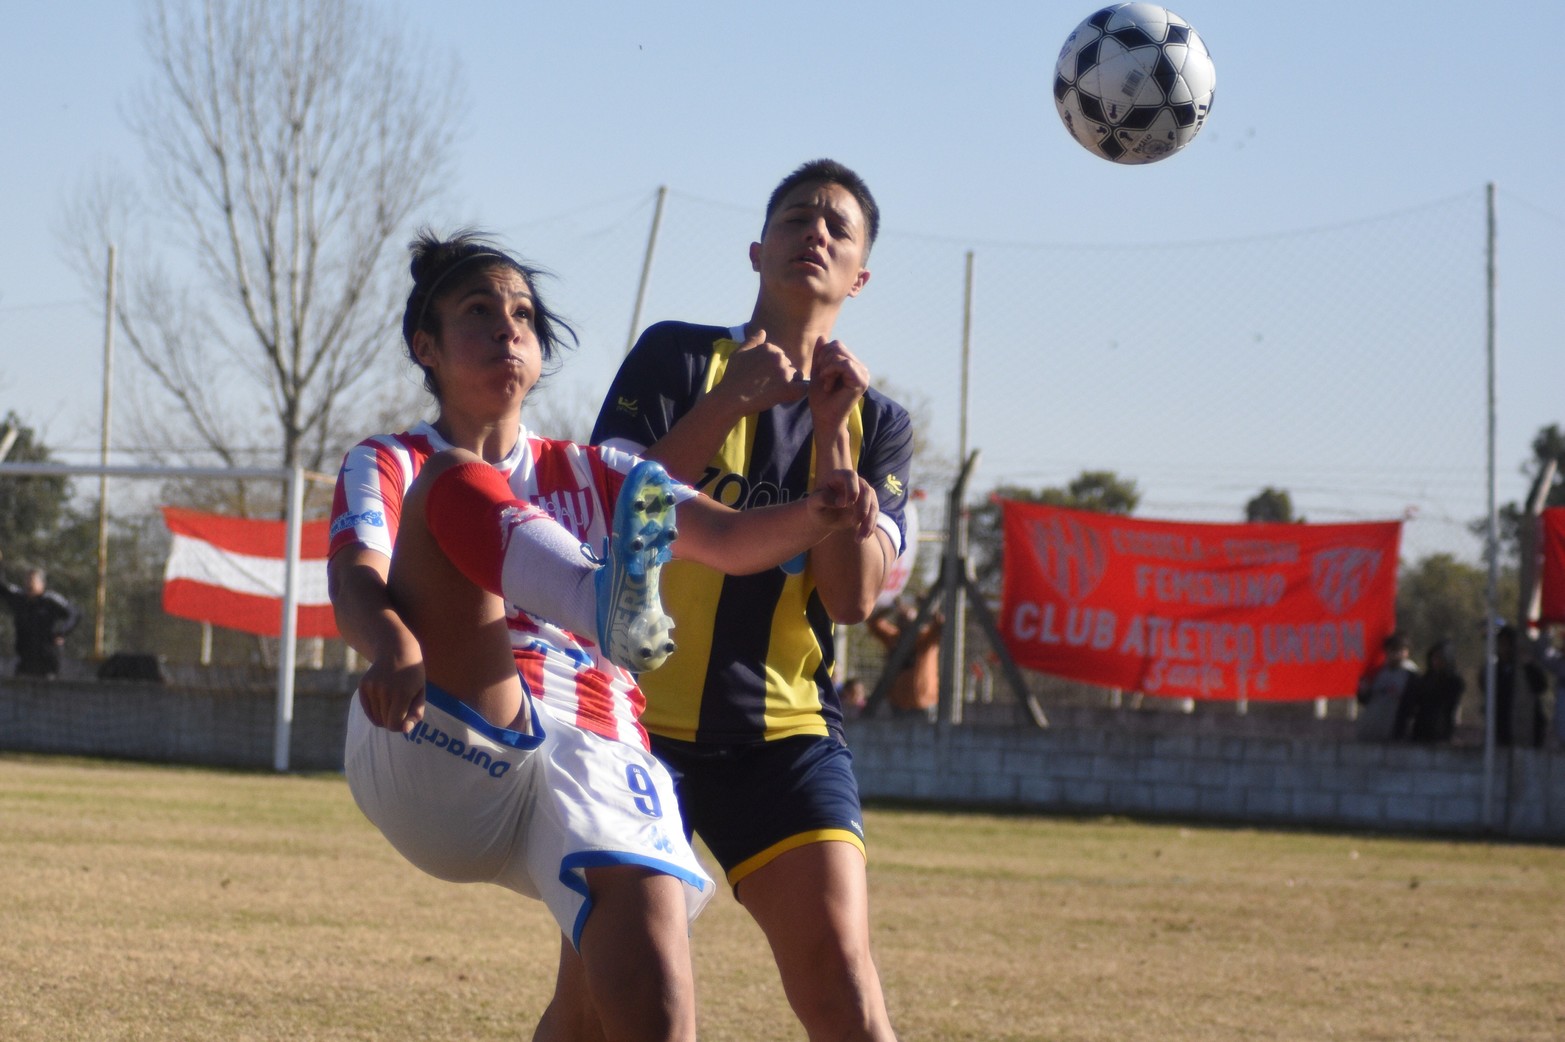 Unión le ganó 4 a 1 a El Quilla en la rama femenina de fútbol.  Representará la liga santafesina en la Copa Santa Fe